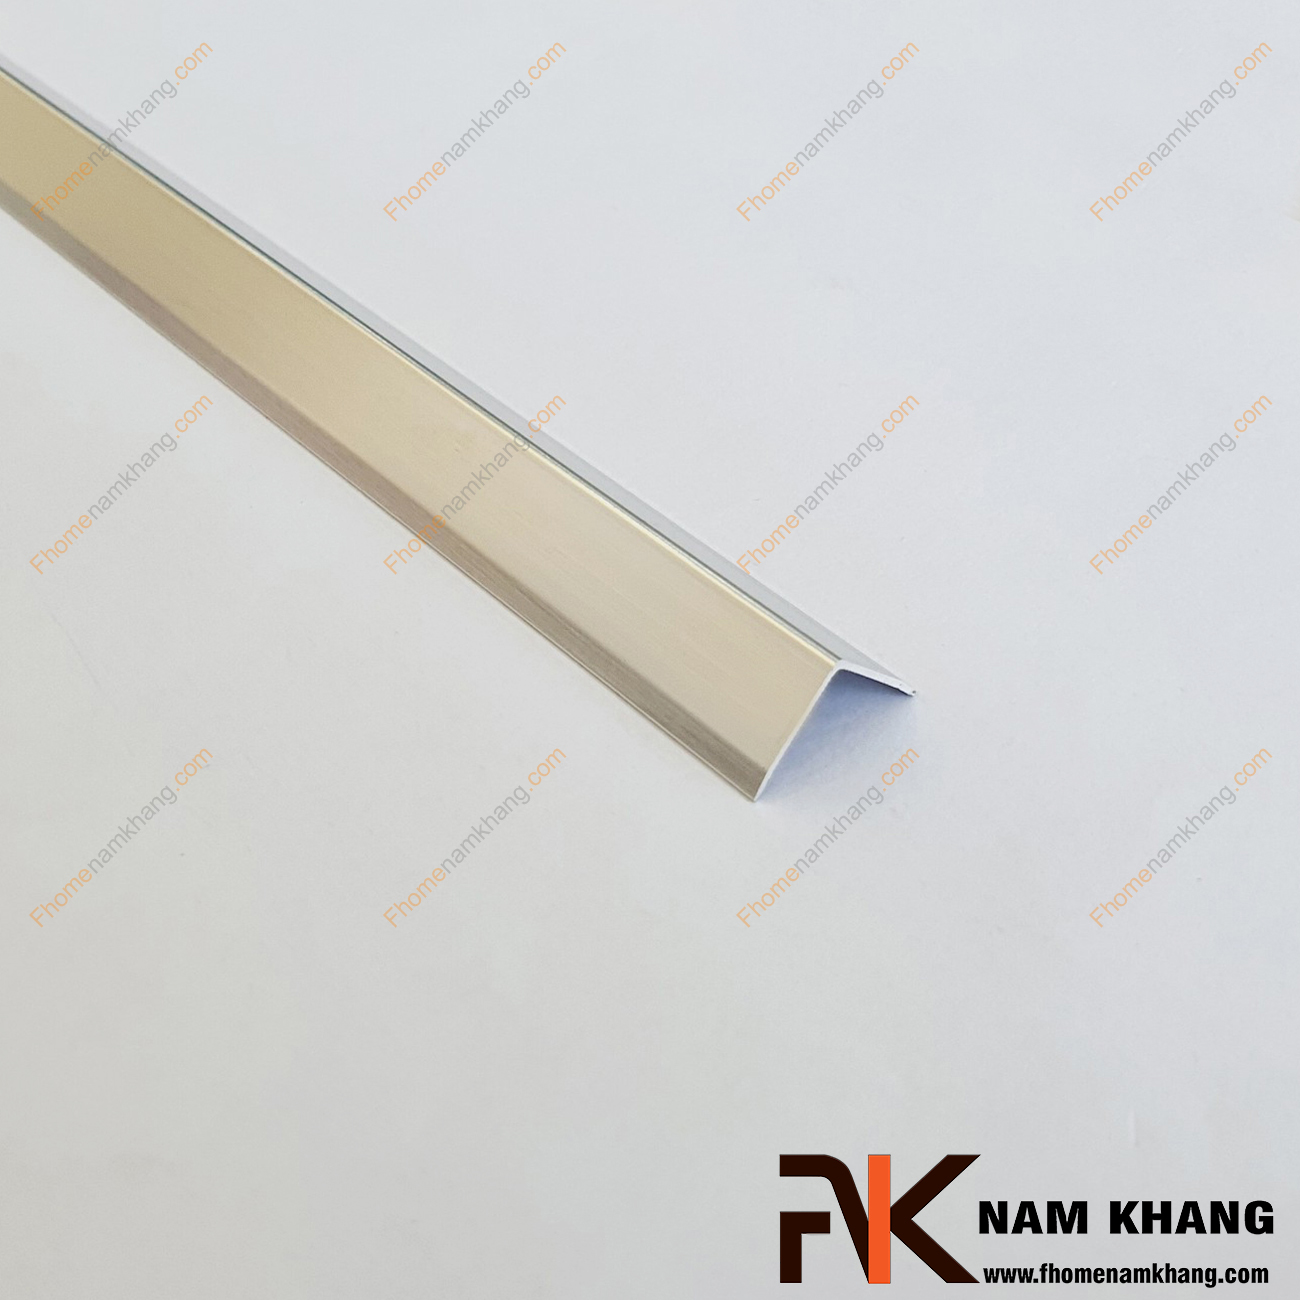 Nẹp chữ V trang trí cạnh gỗ màu bạc bóng NKG-NVN là sản phẩm thường được sử dụng nẹp ở vị trí ngoài cùng của cạnh gỗ.